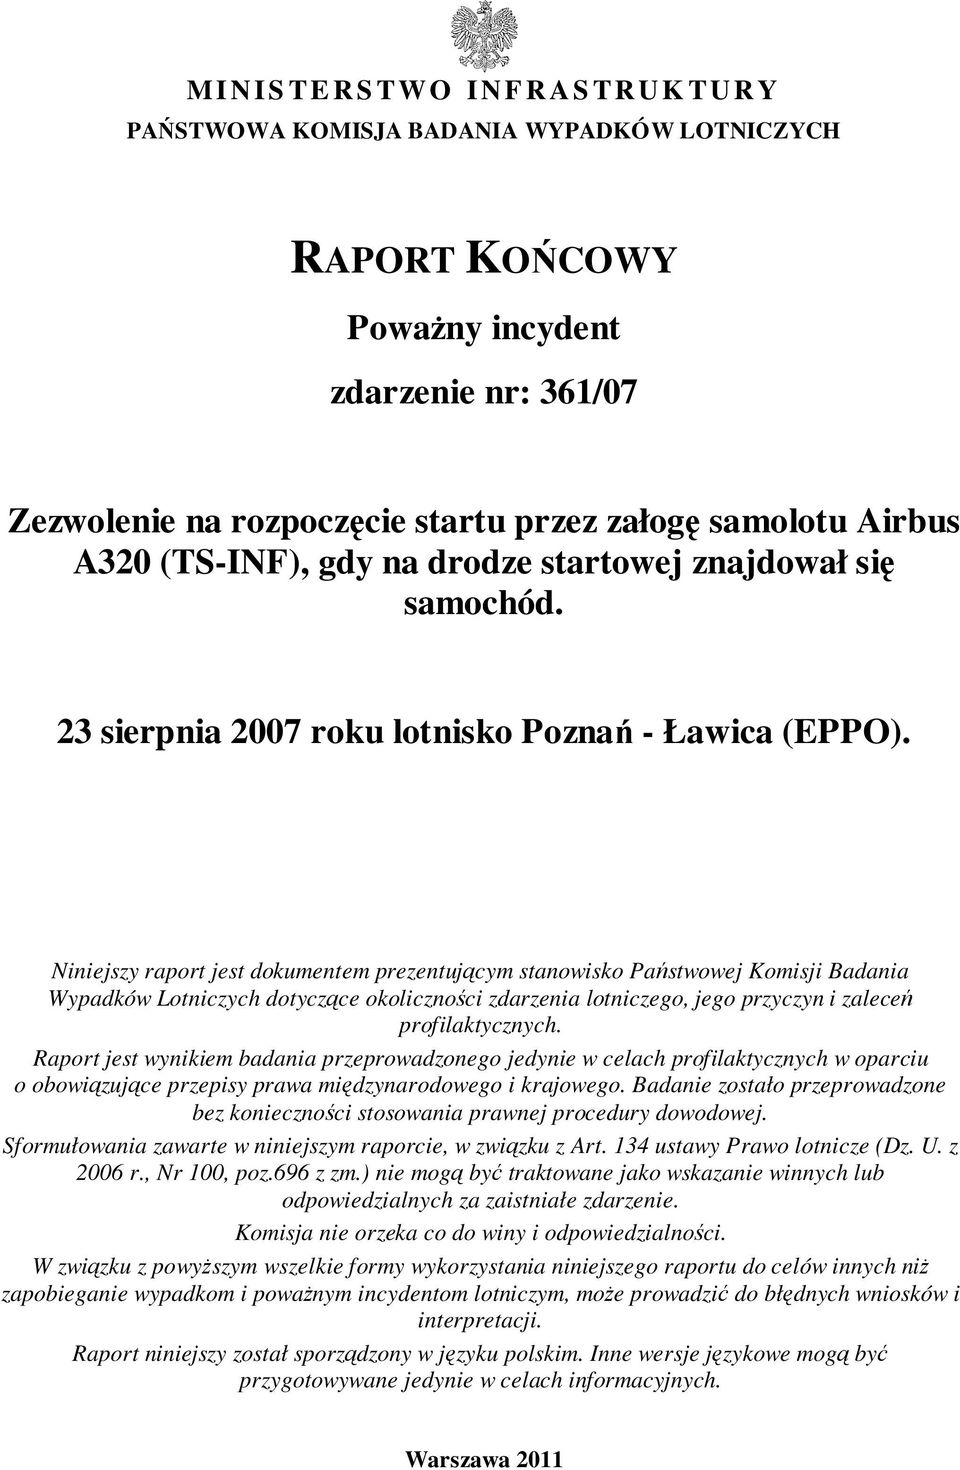 Niniejszy raport jest dokumentem prezentującym stanowisko Państwowej Komisji Badania Wypadków Lotniczych dotyczące okoliczności zdarzenia lotniczego, jego przyczyn i zaleceń profilaktycznych.